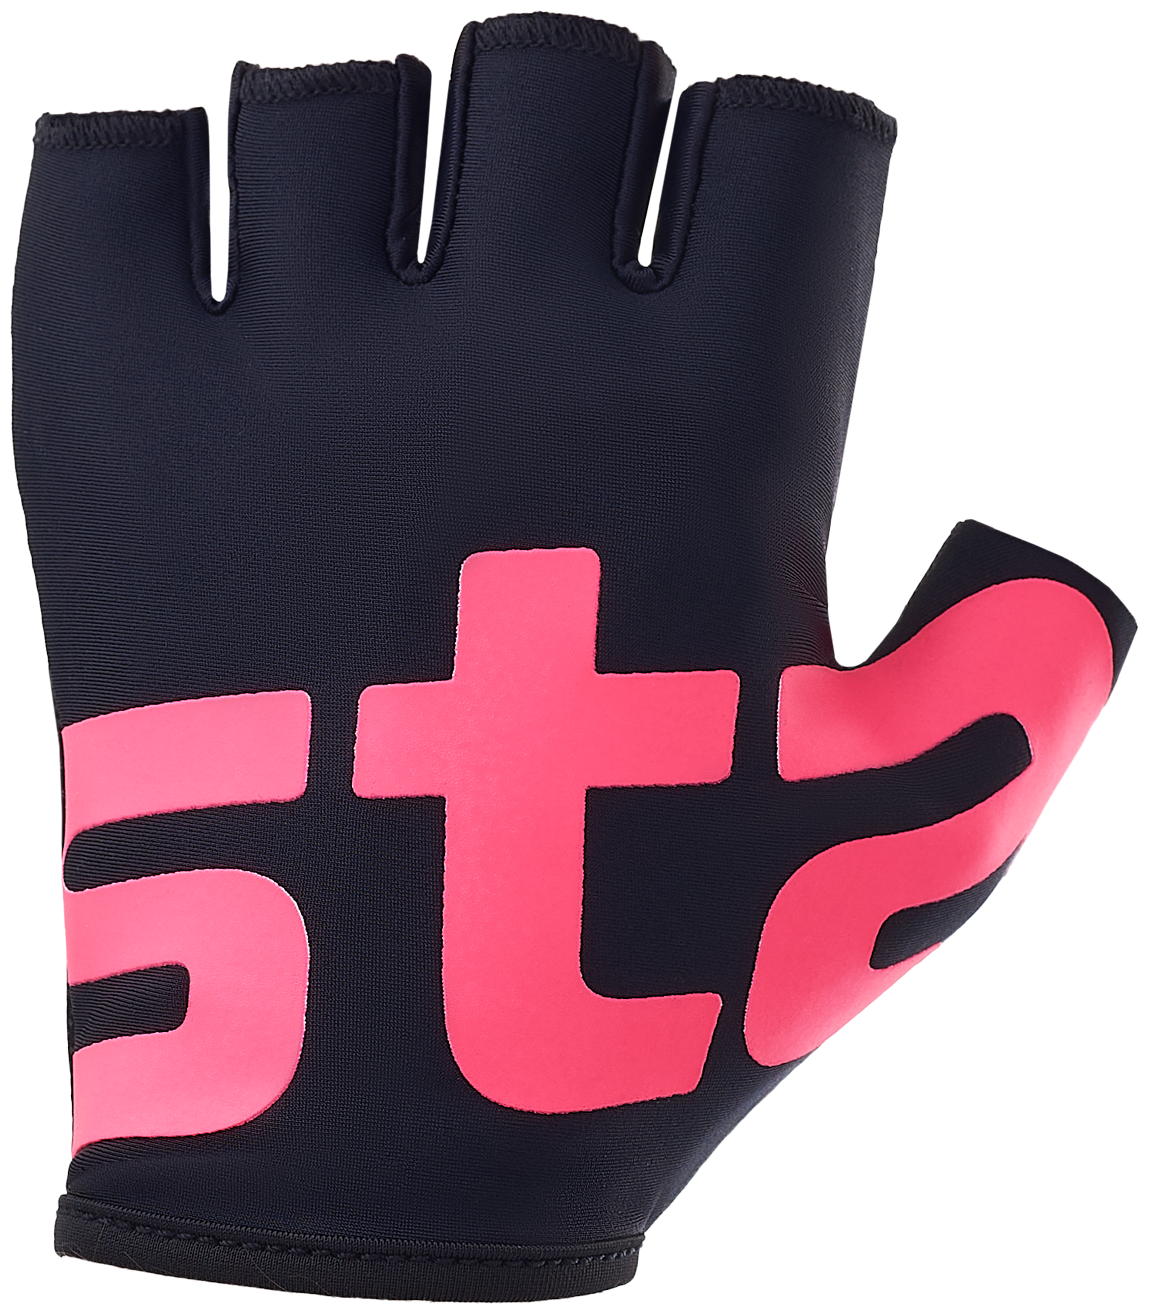 Перчатки для фитнеса Starfit WG-102, черный/малиновый, XS